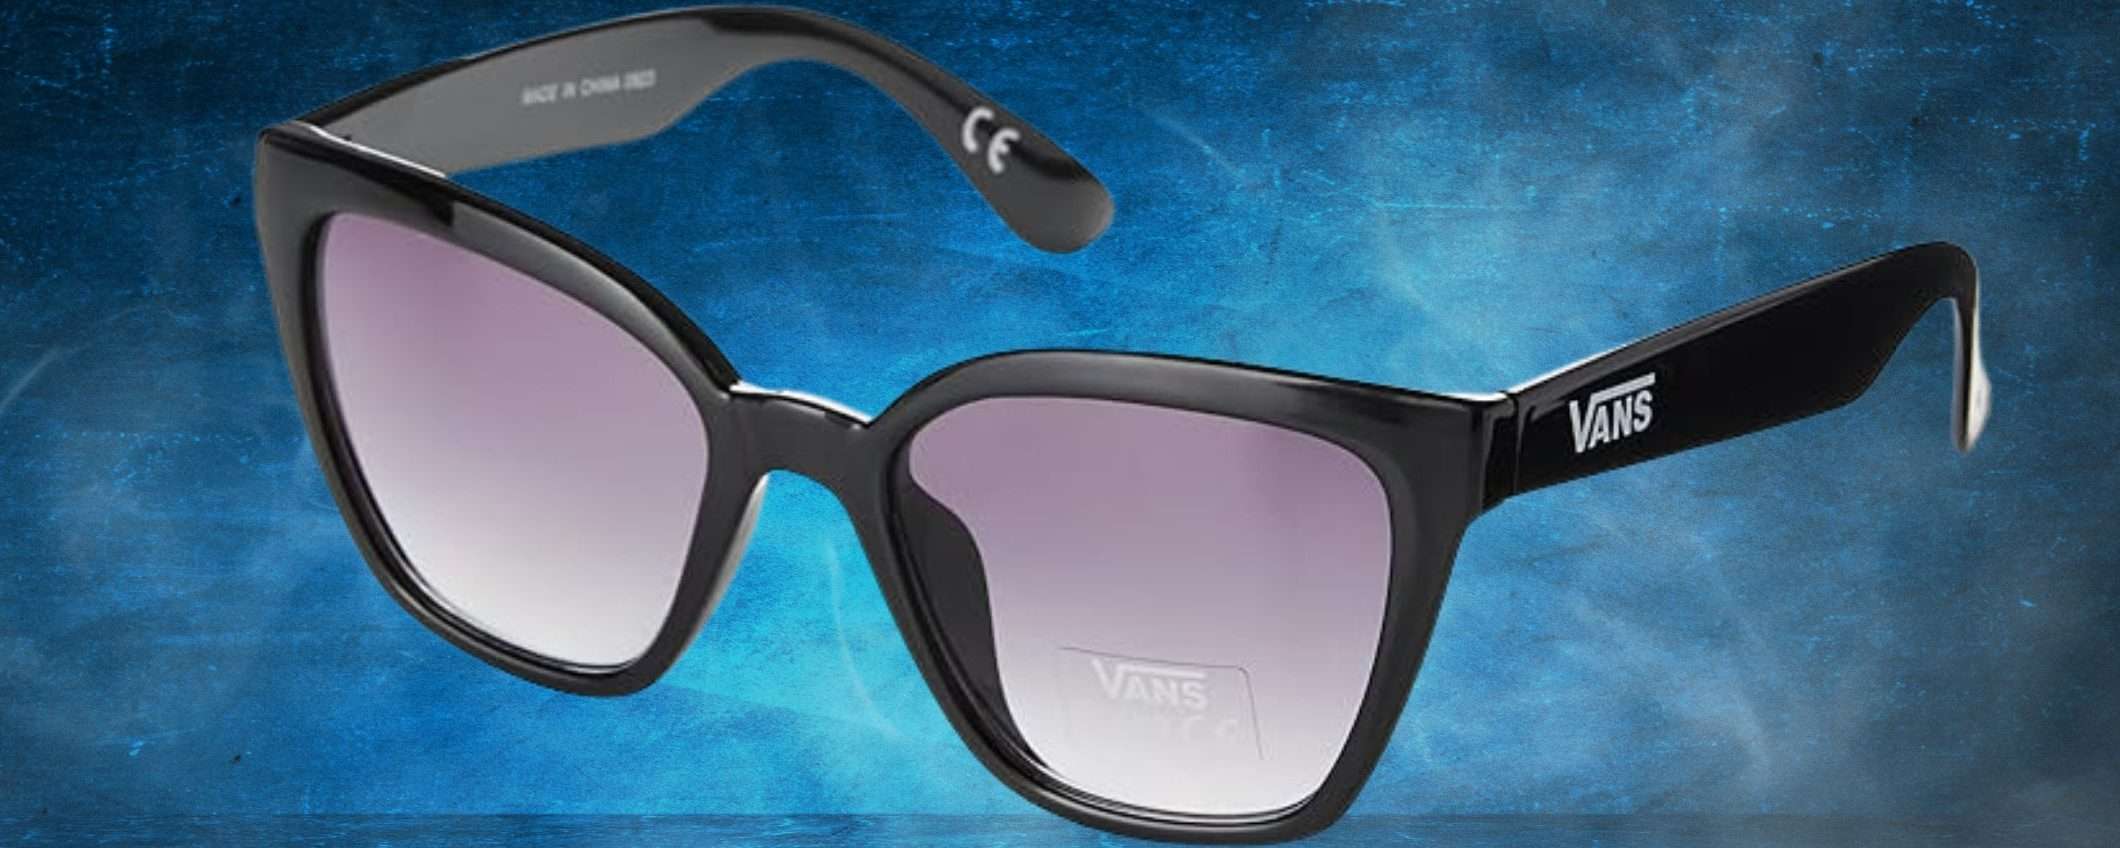 VANS: occhiali da sole da uomo a 15€, promo LAMPO SHOCK su Amazon